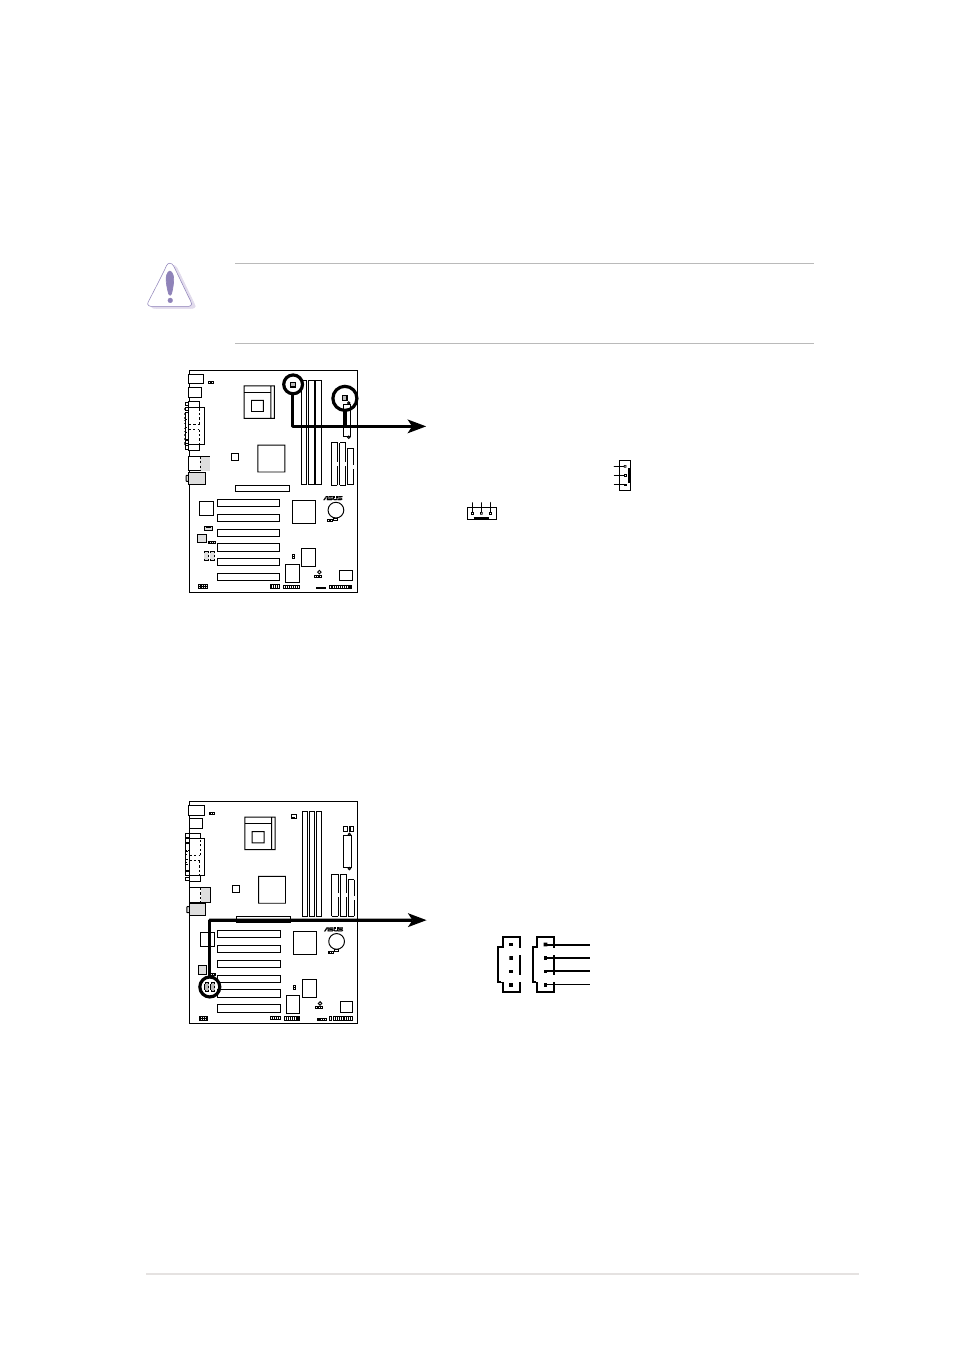 Asus p4pe-x motherboard user guide 1-19 | Asus P4PE-X/TE User Manual | Page  29 / 68 | Original mode